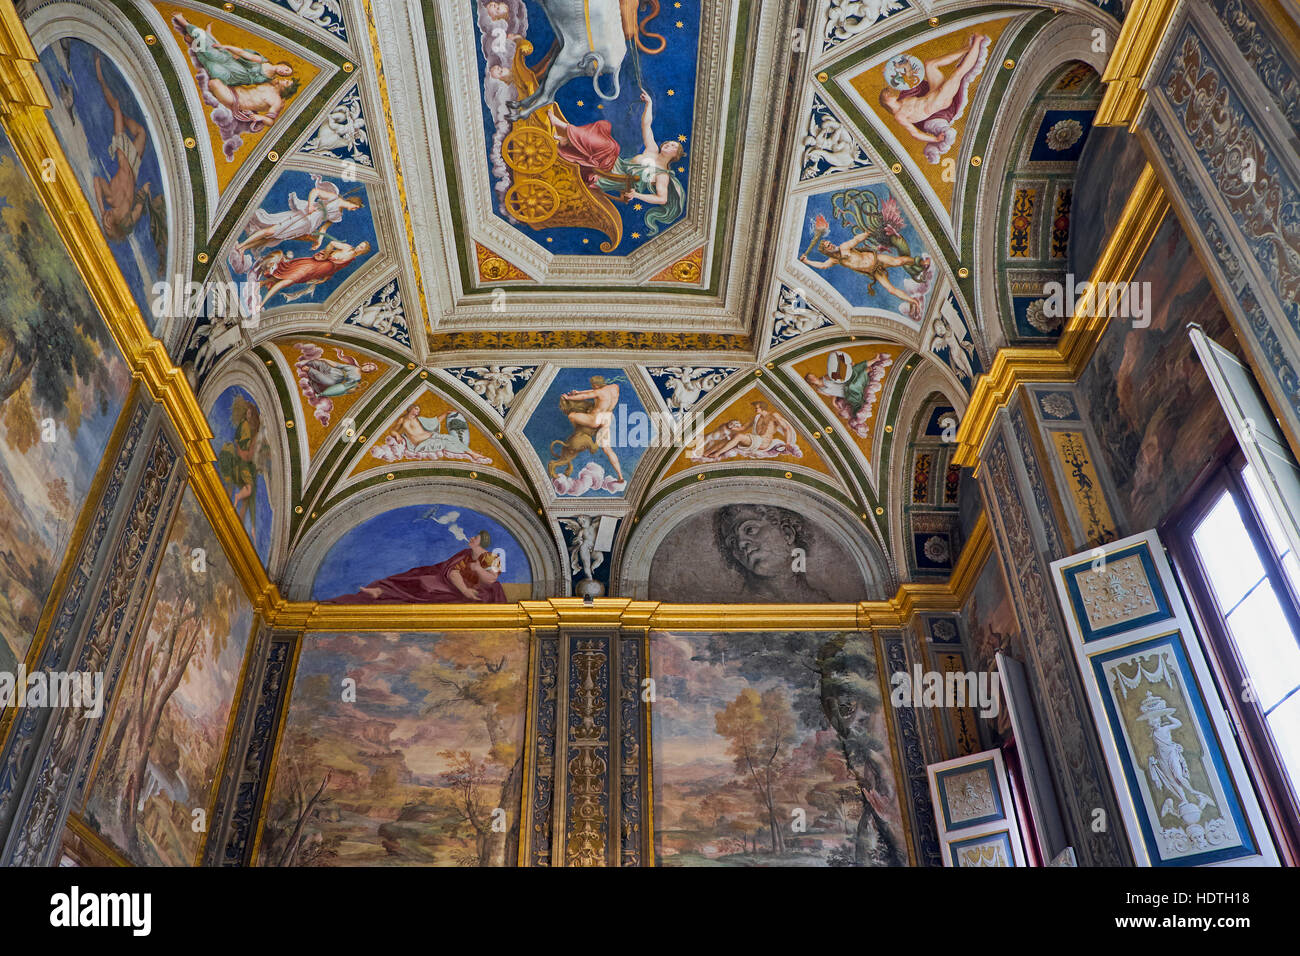 Ceiling of the Villa Farnesina. Rome, Italy Stock Photo